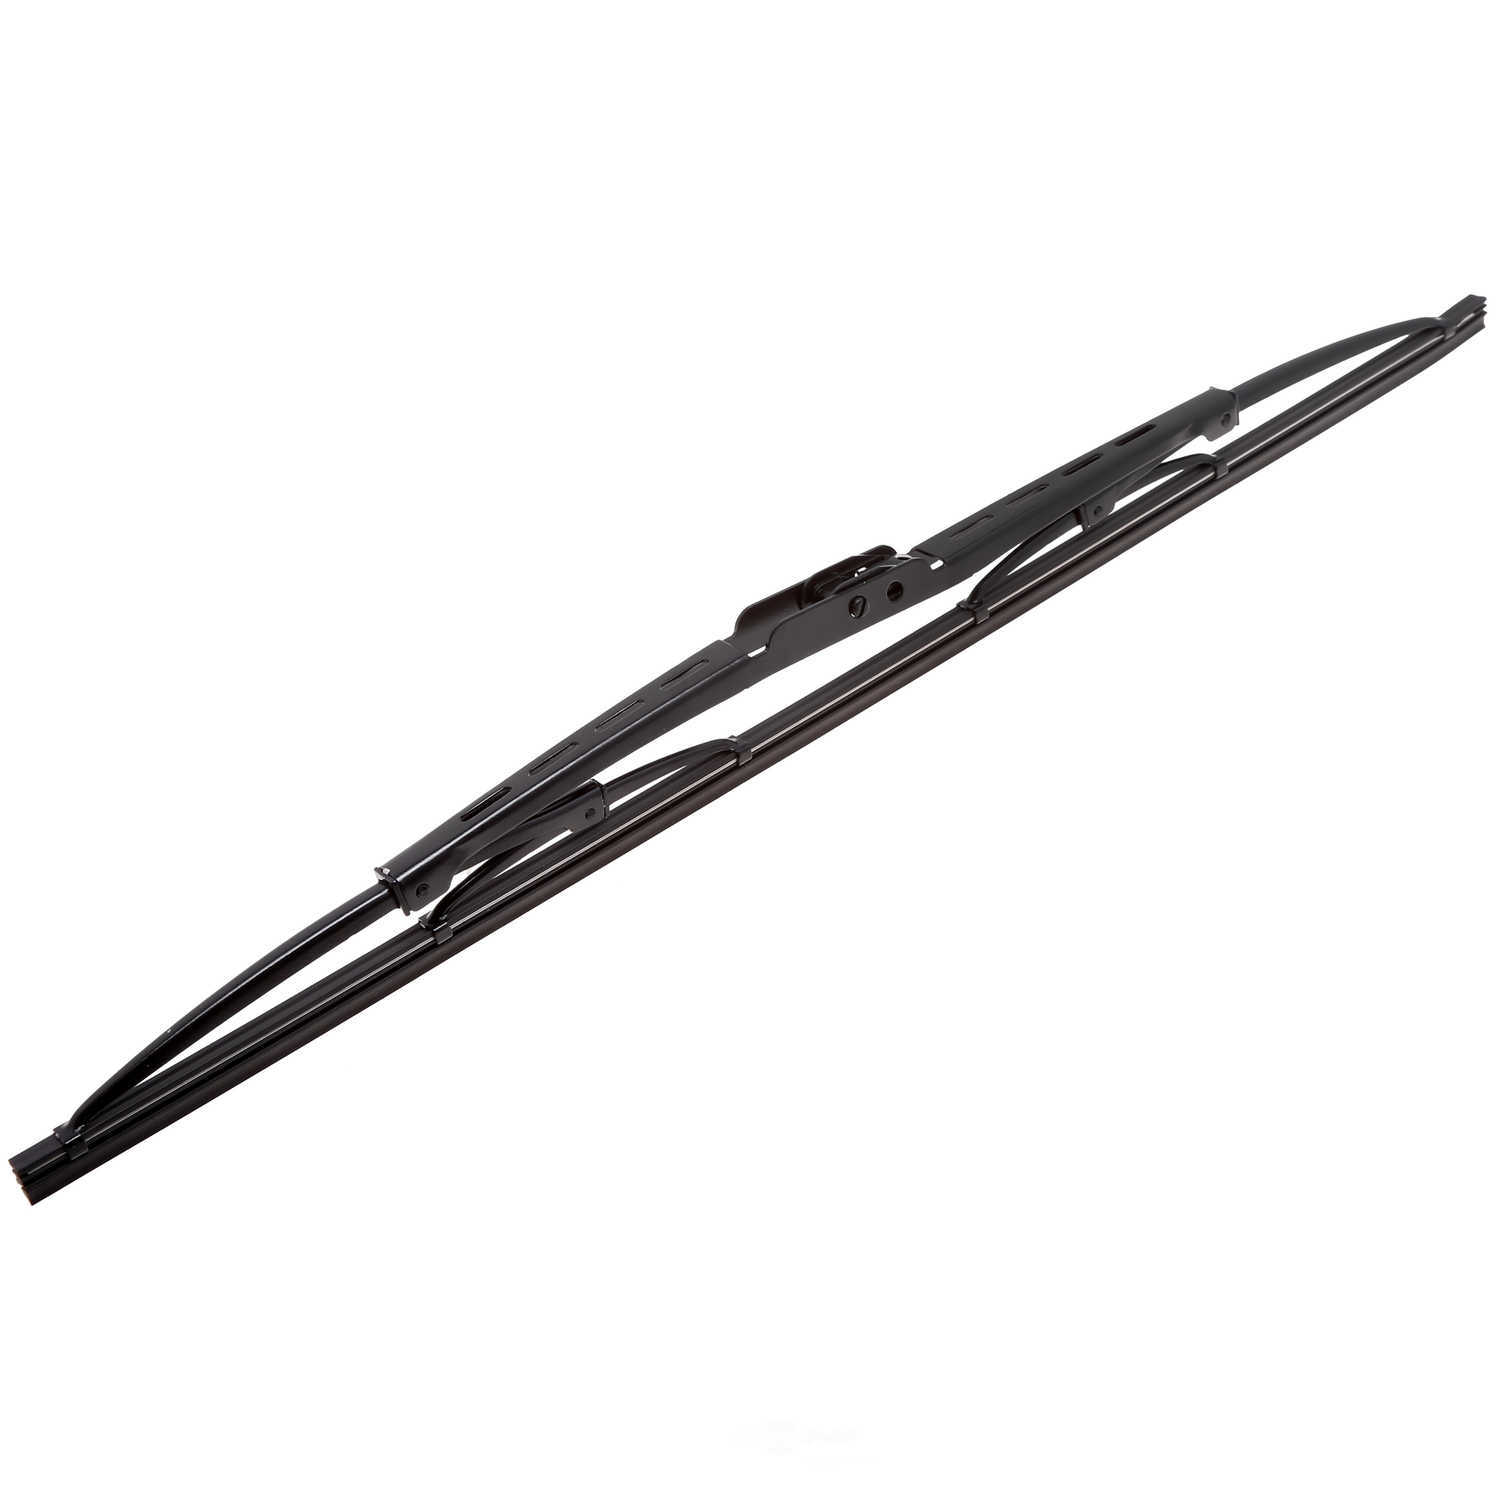 ANCO WIPER PRODUCTS - ANCO 31-Series Wiper Blade - ANC 31-18